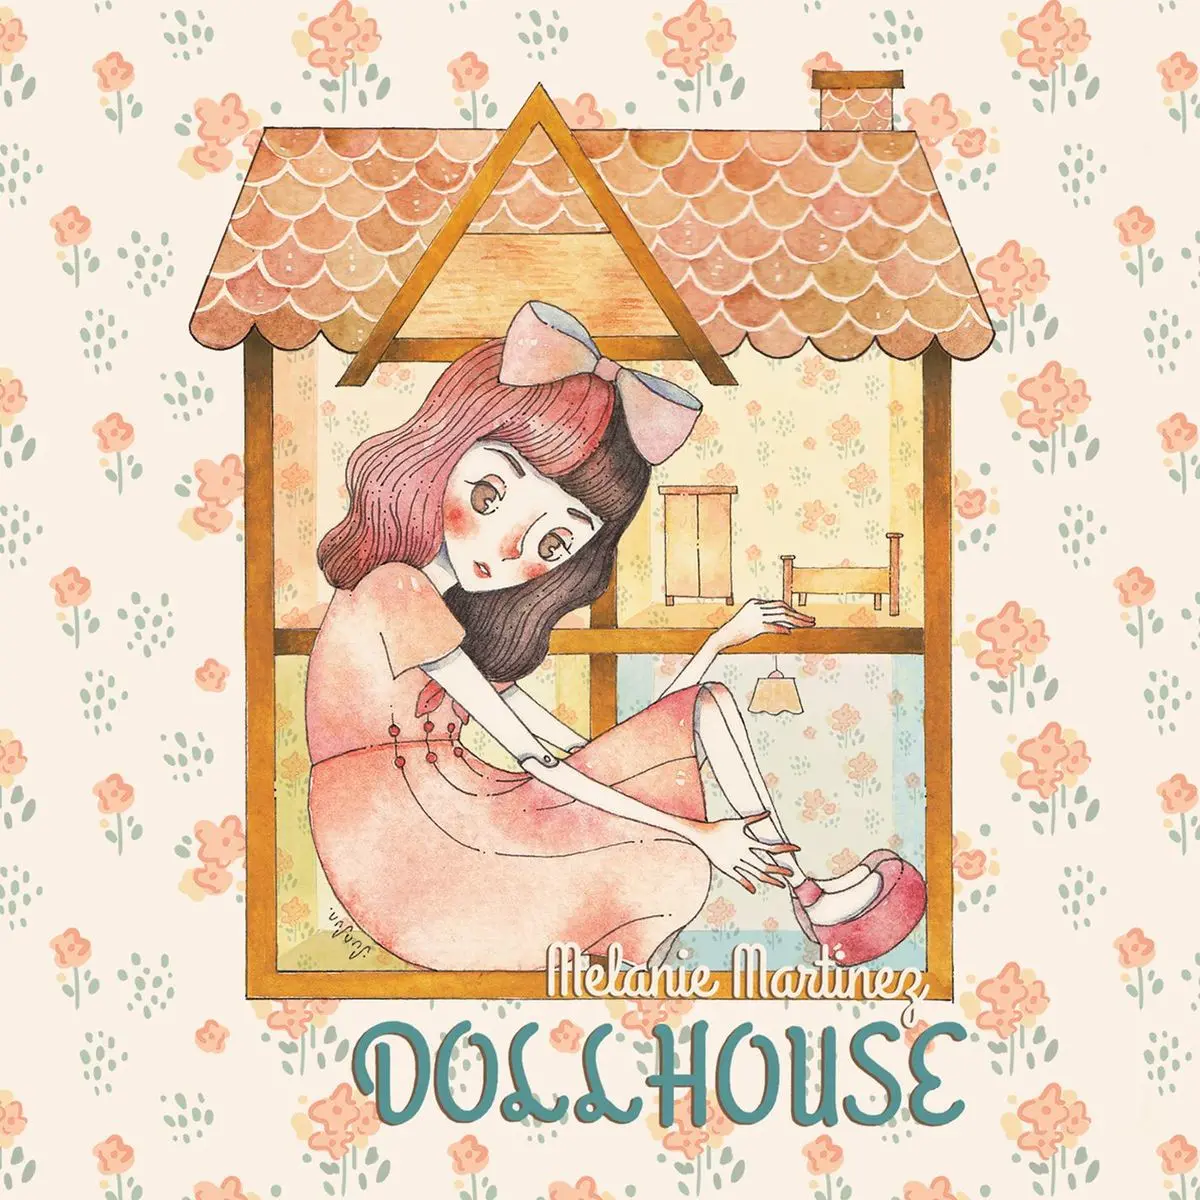 Dollhouse Lyrics In English Dollhouse Dollhouse Song Lyrics In English Free Online On Gaana Com - dollhouse melanie martinez roblox id code